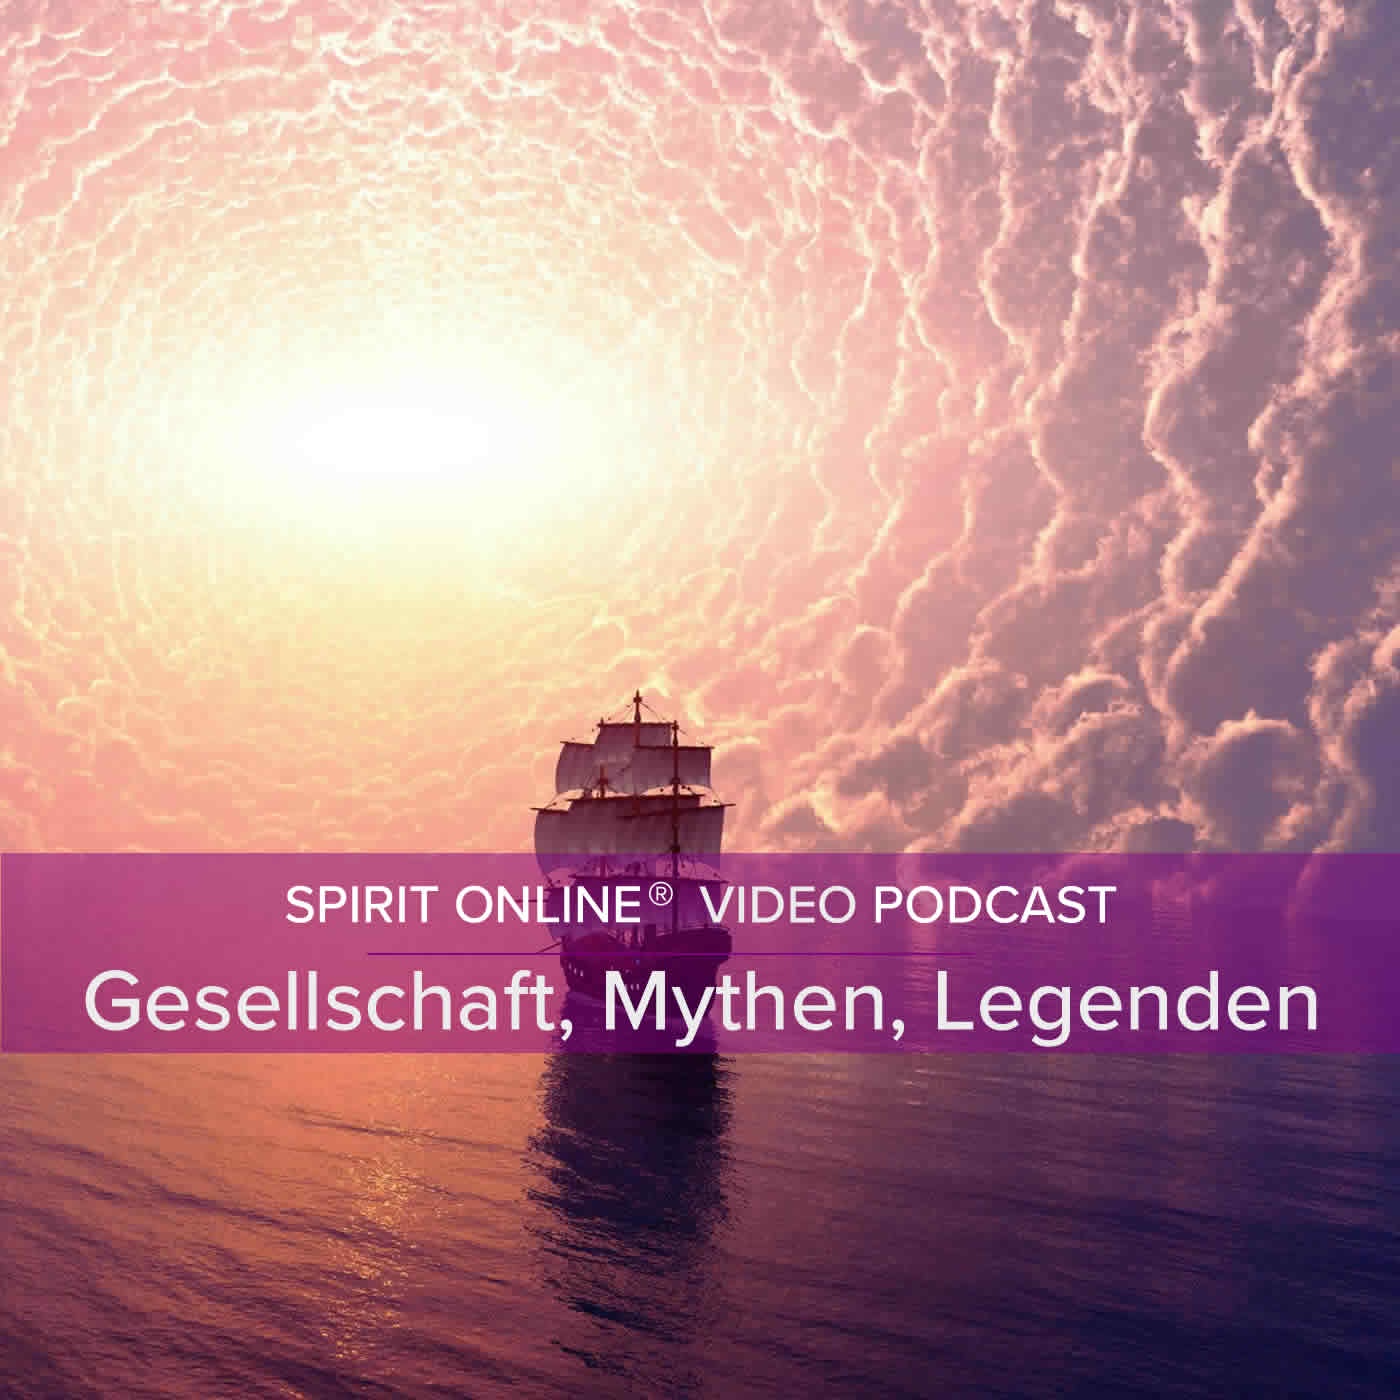 Gesellschaft, Mythen und Legenden Podcast mit Andrea